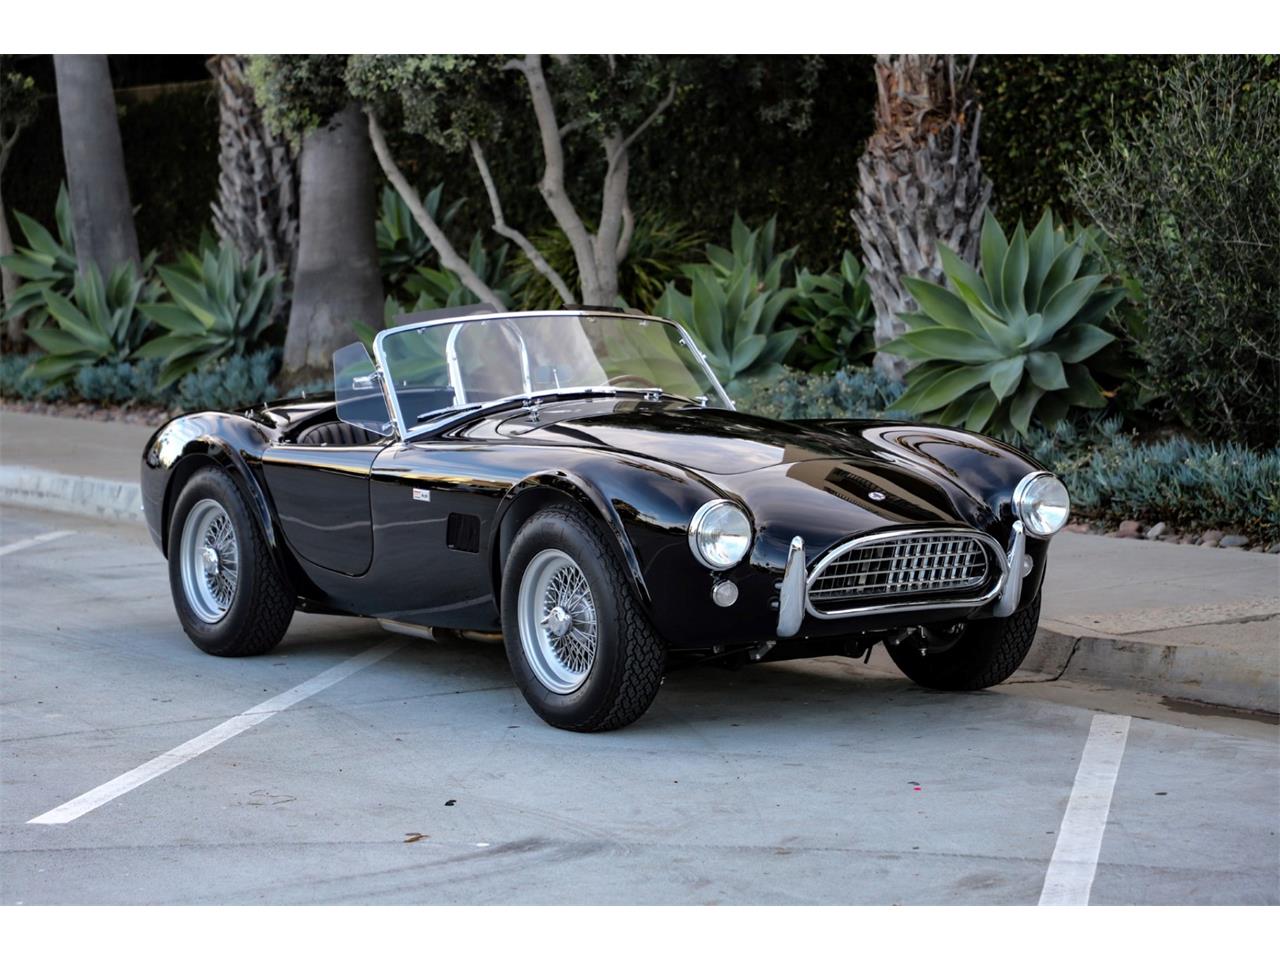 For Sale: 1965 Shelby Cobra in La Jolla, California for sale in La Jolla, CA